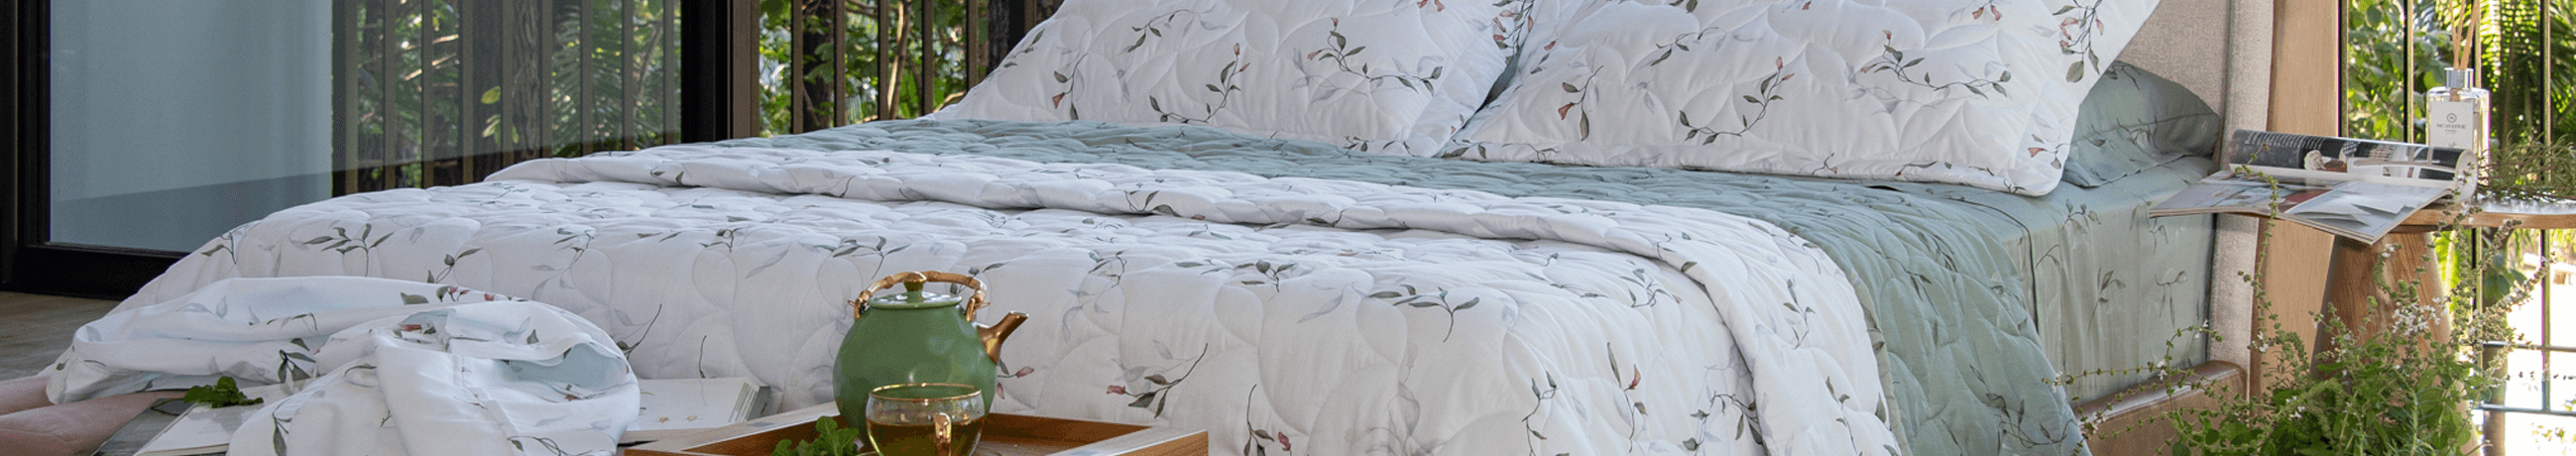 Colchas de Matelssê, também conhecidas como cobre leito são perfeits para deixar sua cama elegante e supr confortáel. Variedade de colchas , estampadas e lisas.